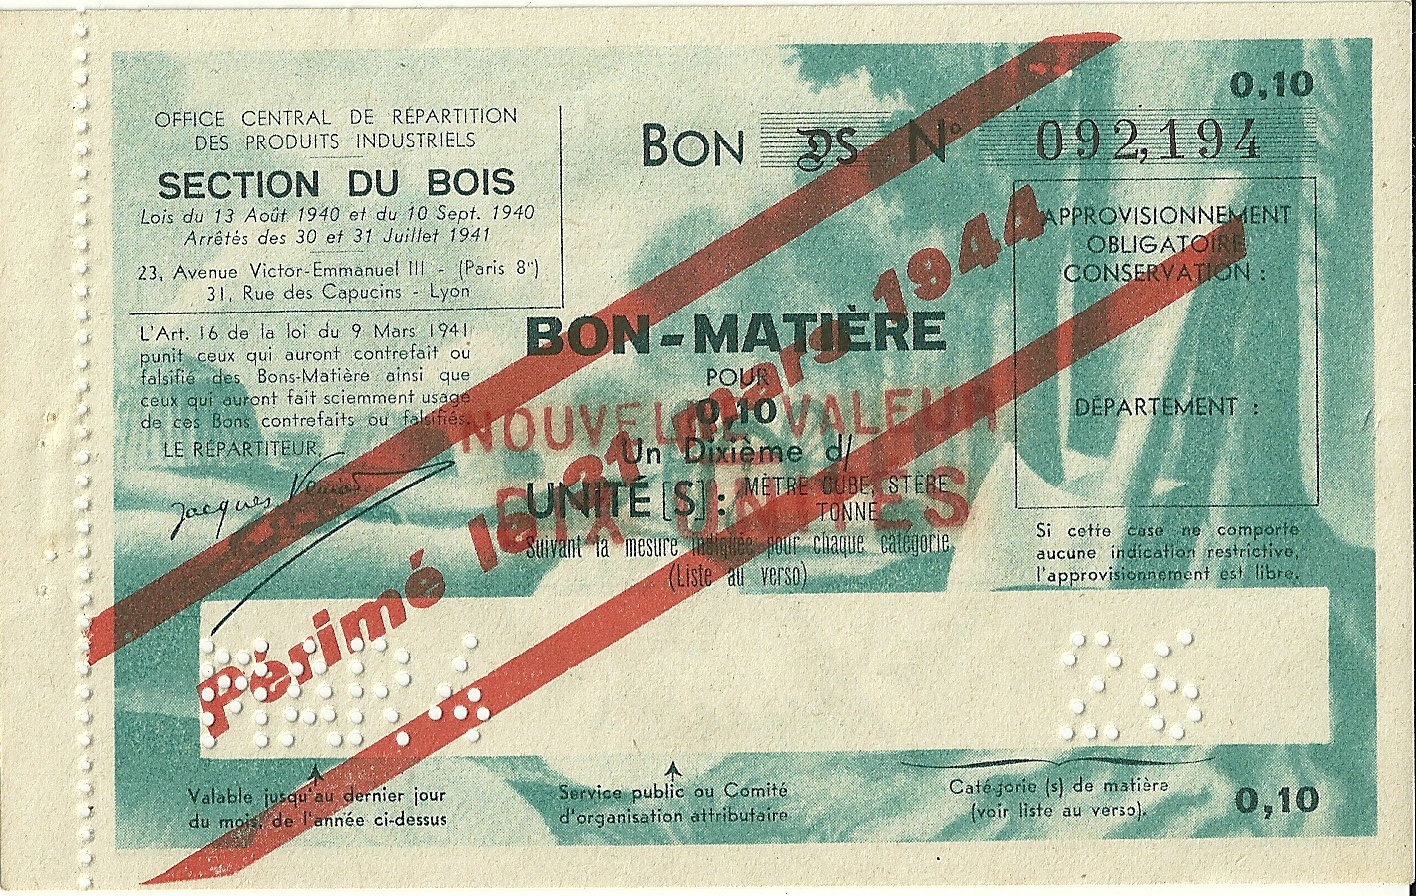 SECTION DU BOIS - BON DS - BON-MATIERE POUR 0,10 Un Dixième d'UNITE - 092,194